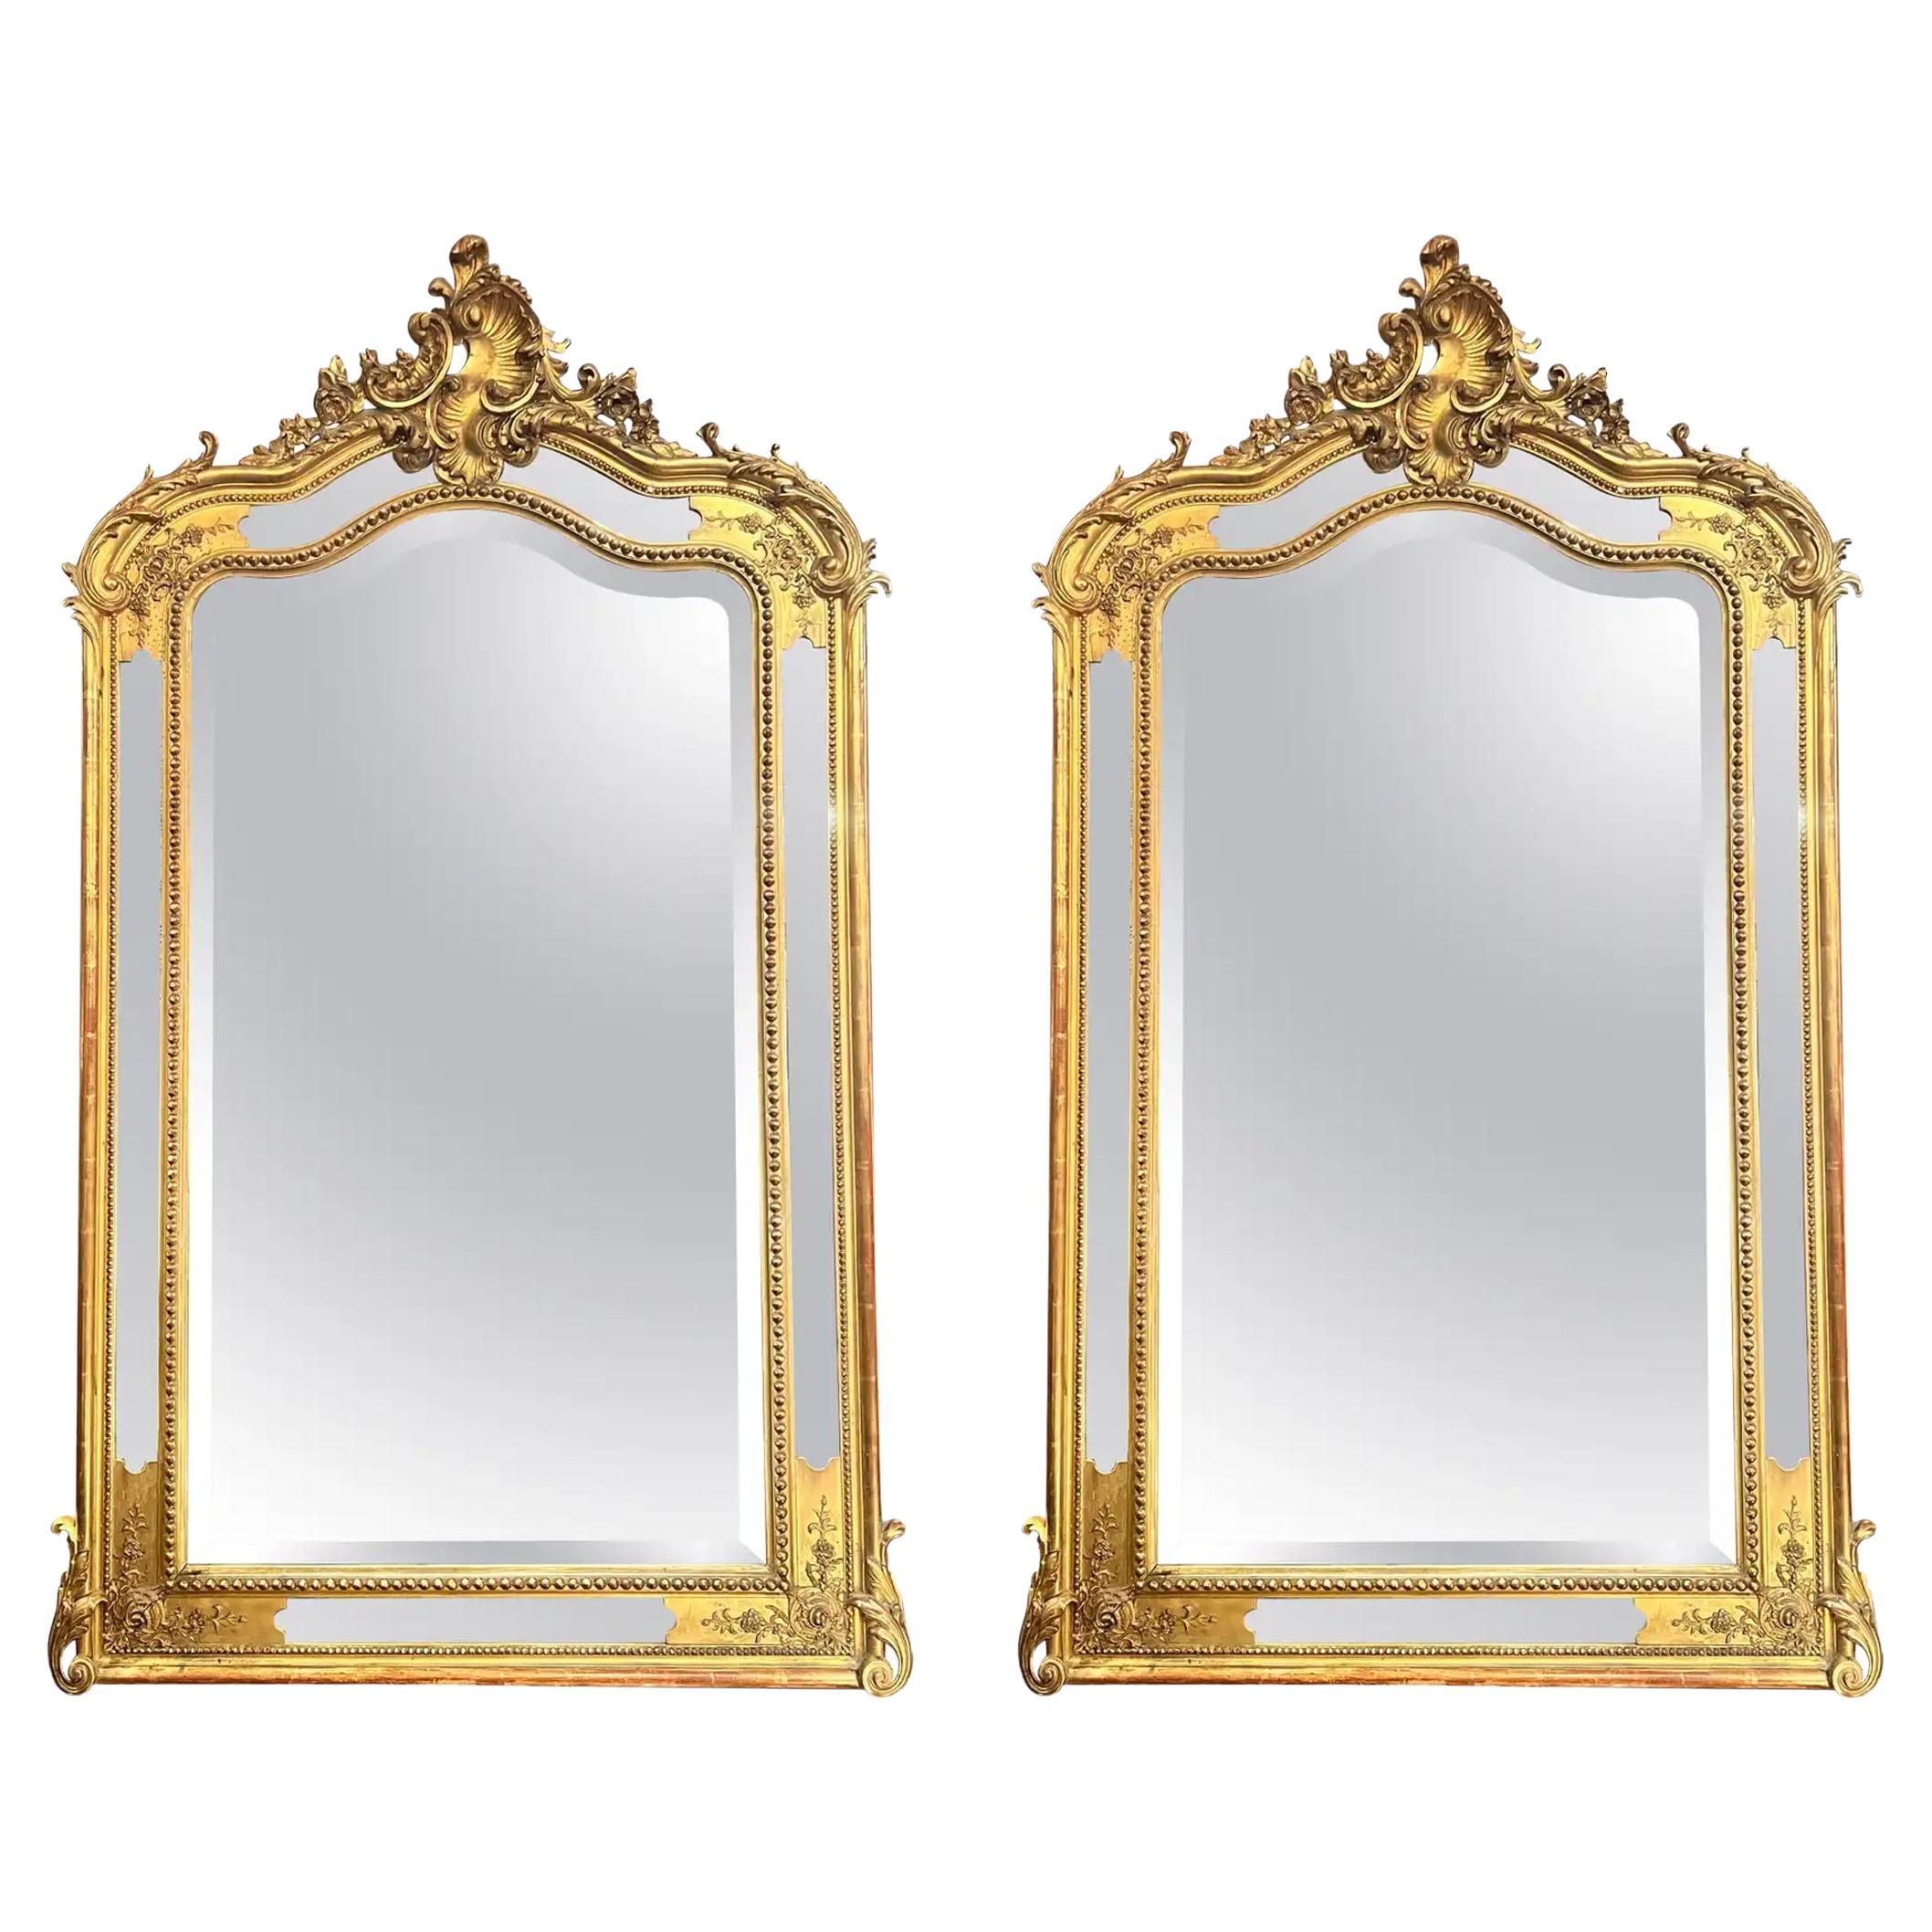 Paire de miroirs anciens de style Louis XV en bois sculpté et feuilles d'or, vers 1890.